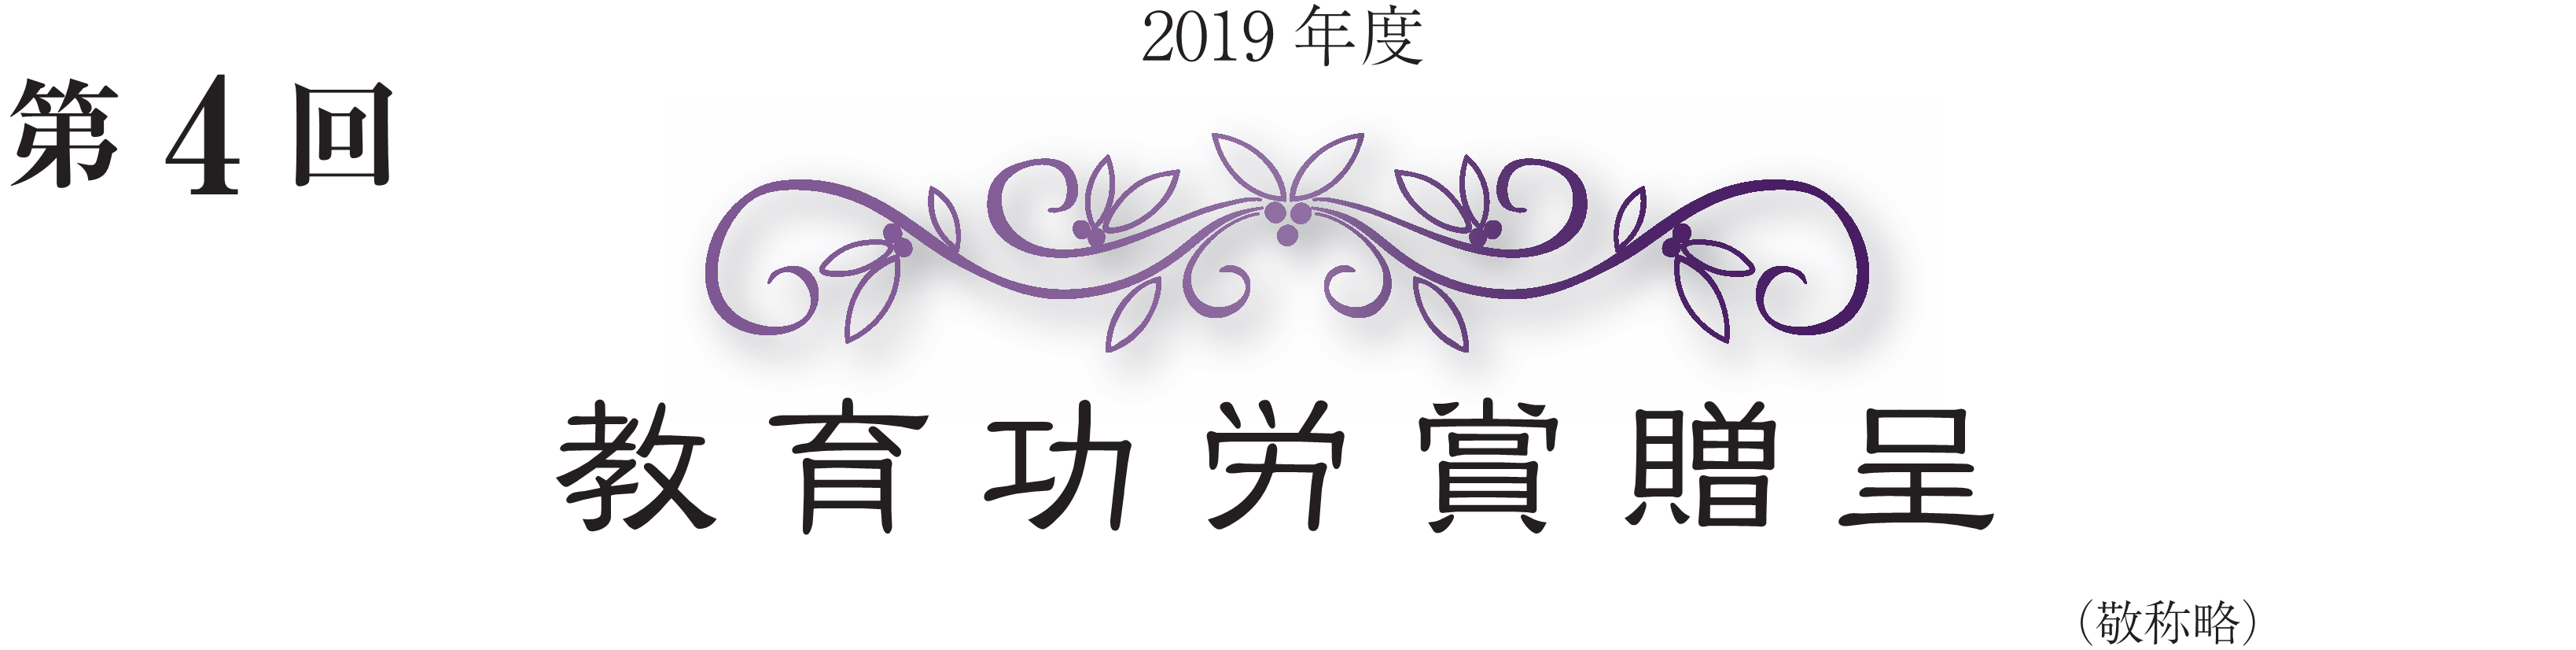 2019年度 第4回 教育功労賞贈呈（敬称略）